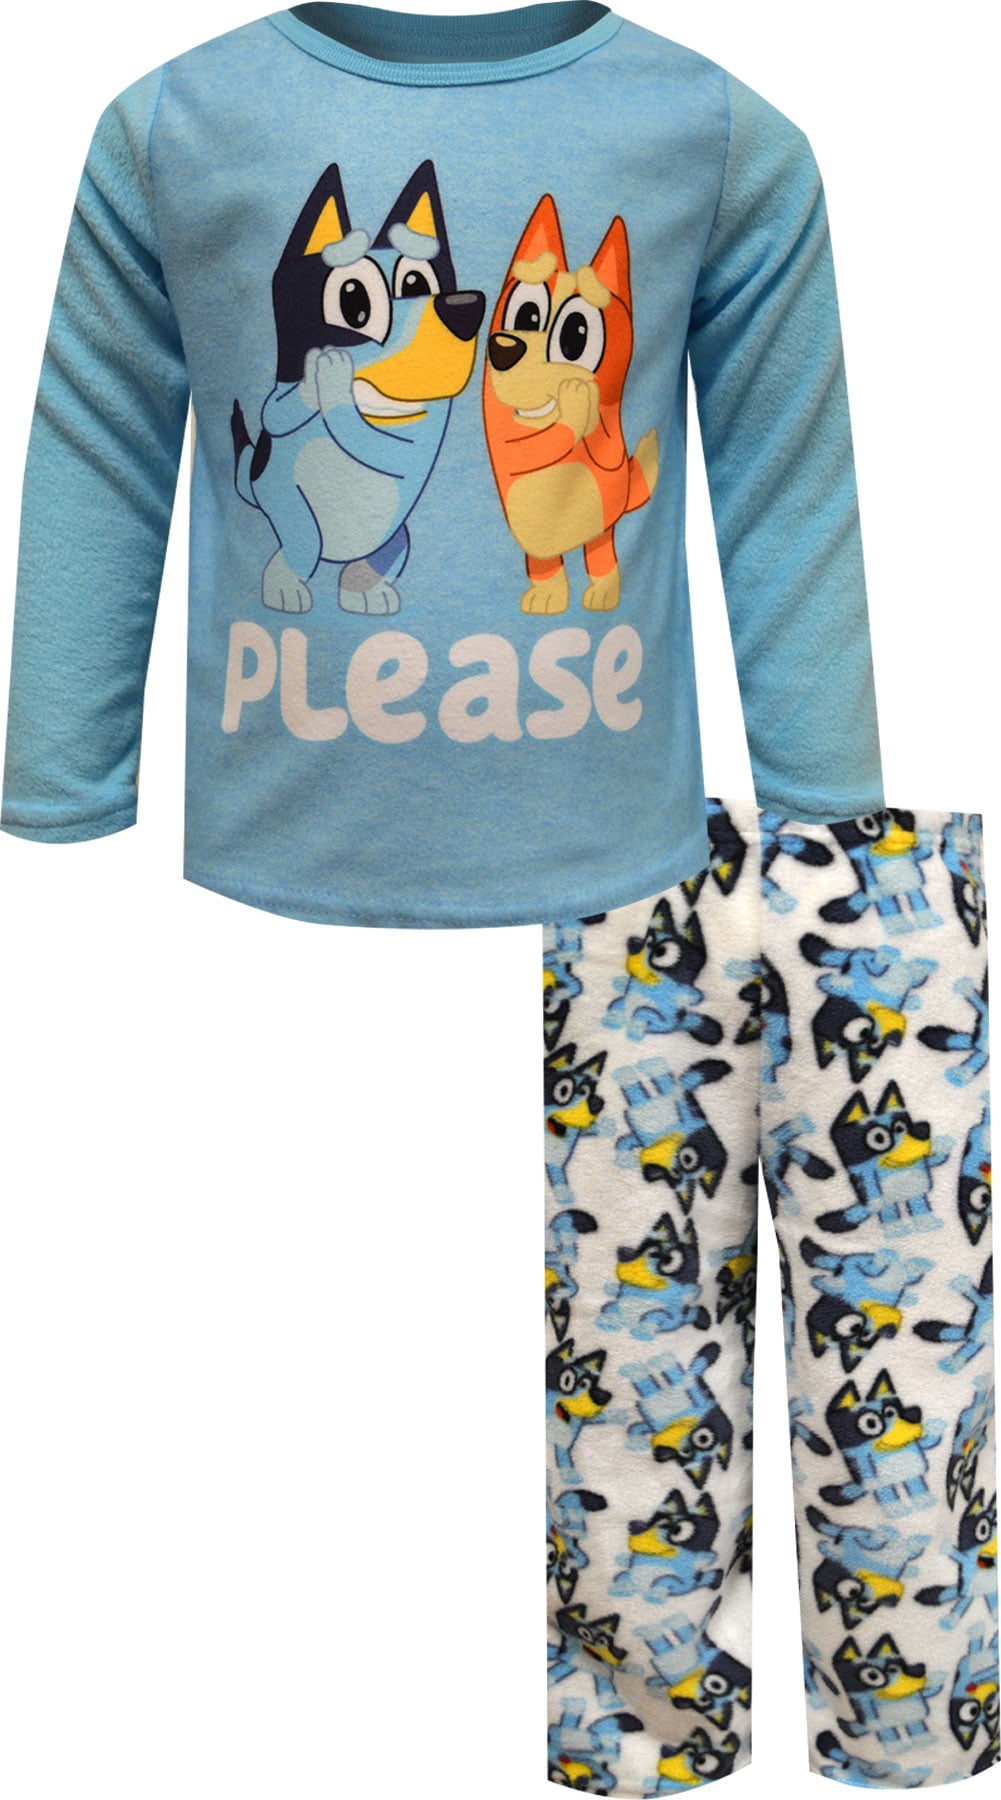 Bluey y Bingo Fleece Pijamas para Niños - Tamaño Chile